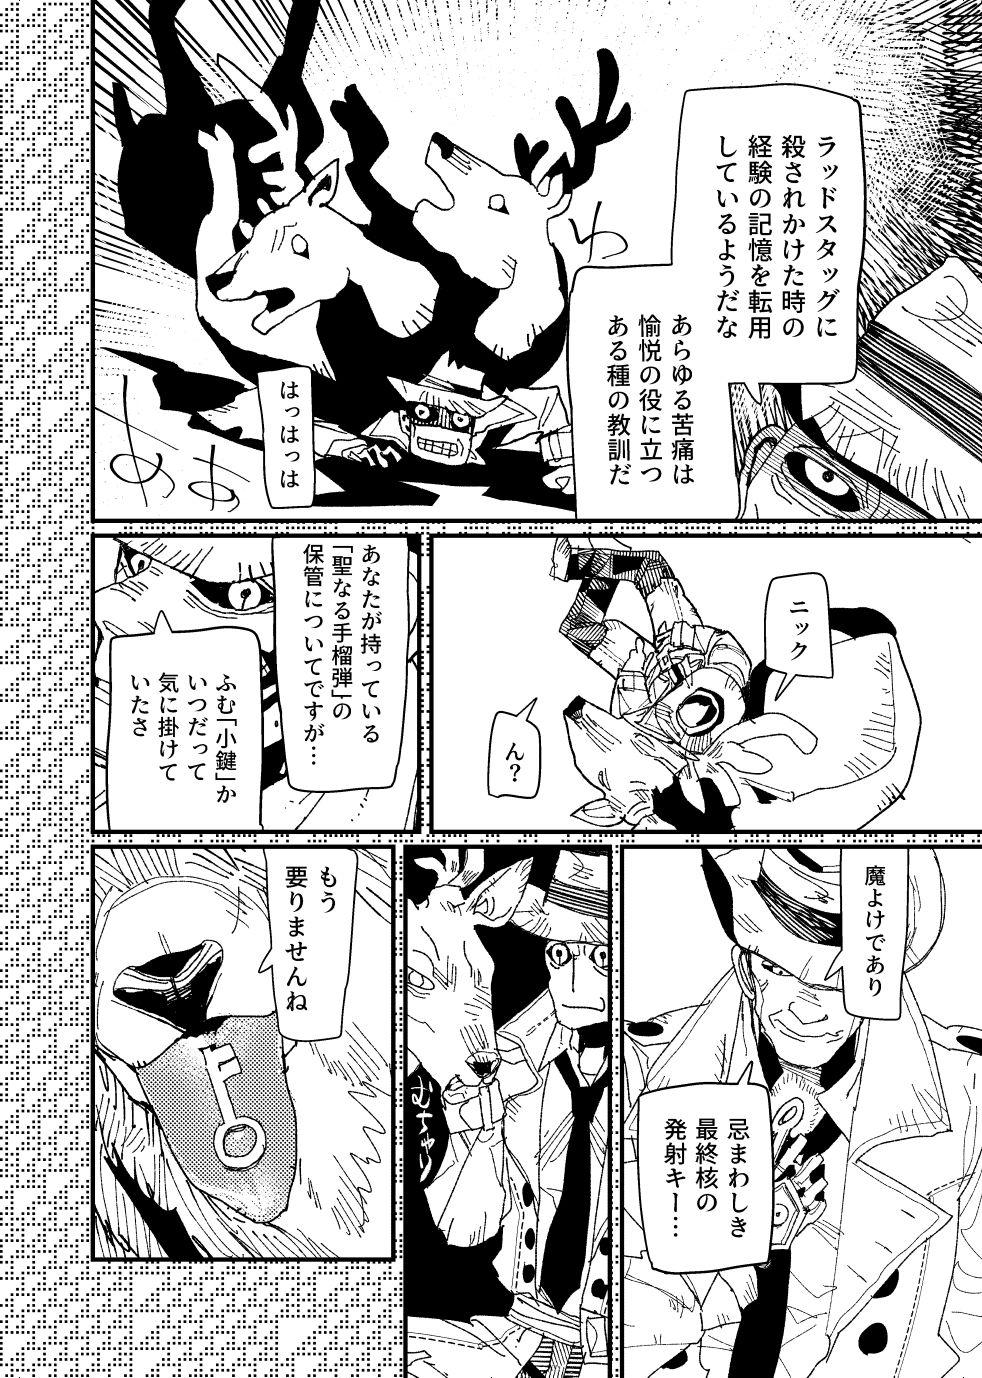 [Tanokura] FO4 [R18] Dimaniku Manga 35